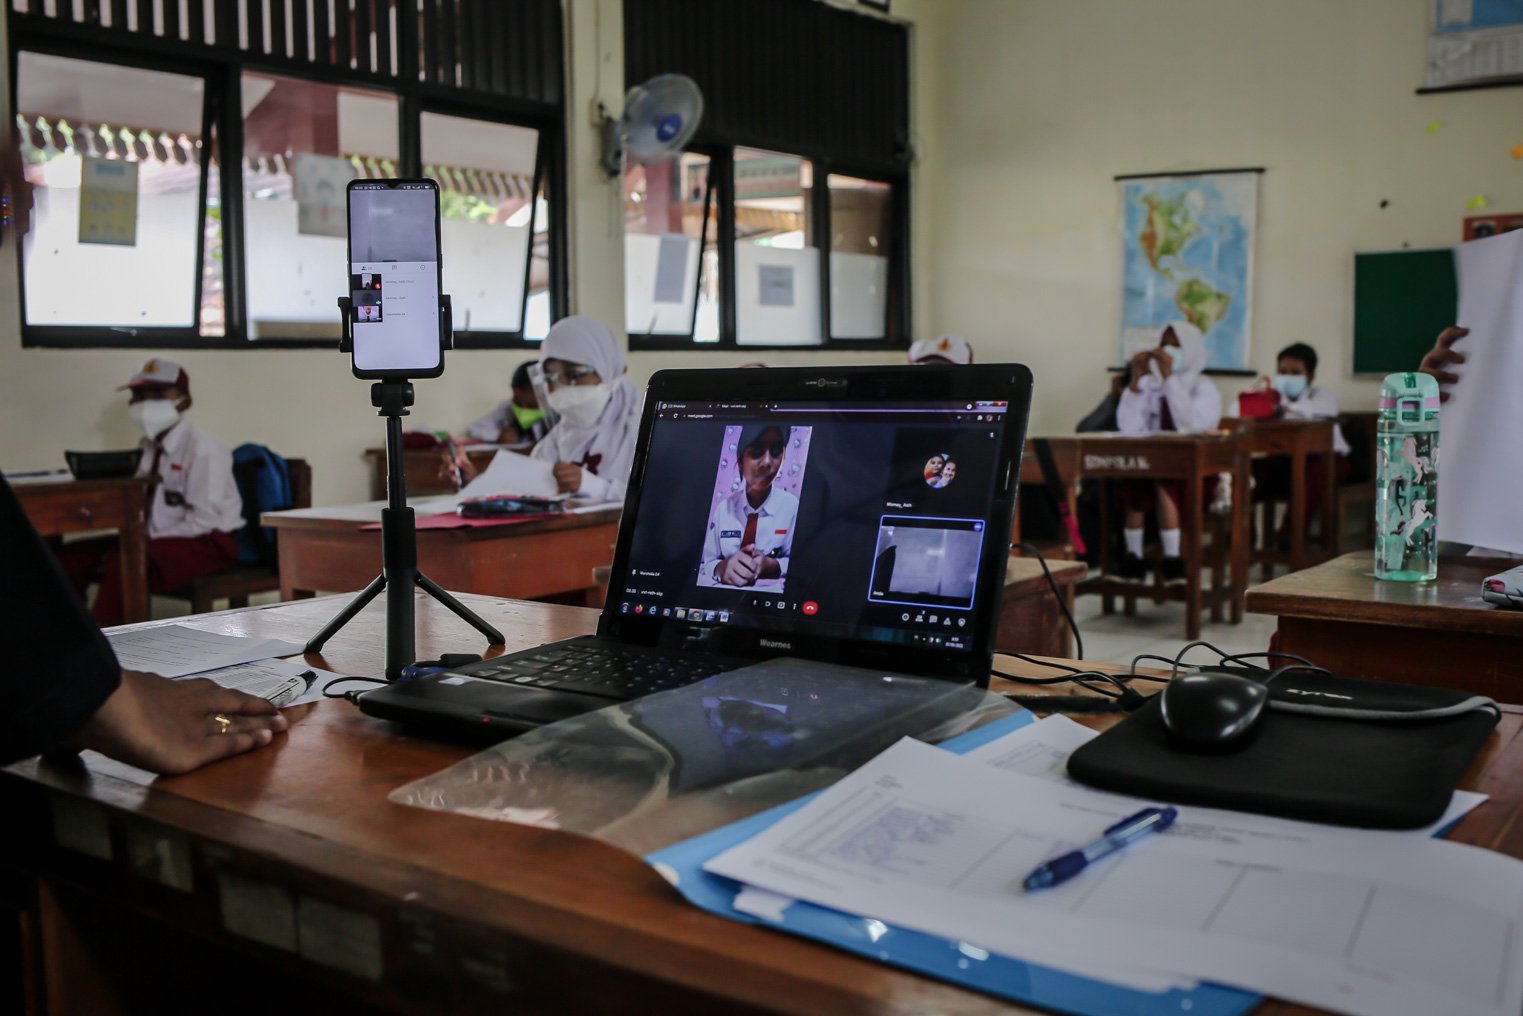 Sejumlah siswa mengikuti kelas secara virtual saat kegiatan Pembelajaran Tatap Muka (PTM) perdana di Sekolah Dasar Negeri (SDN) Pondok Labu 14 Pagi, Cilandak, Jakarta Selatan, Senin, (30/8/2021). Setiap sekolah yang menggelar tatap muka harus melalui asesmen dari Dinas Pendidikan DKI Jakarta. Asesmen itu digunakan untuk memetakan kesiapan dan menjadi pertimbangan apakah sekolah bisa membuka proses belajar tatap muka selama pandemi Covid-19.\r\n\r\n